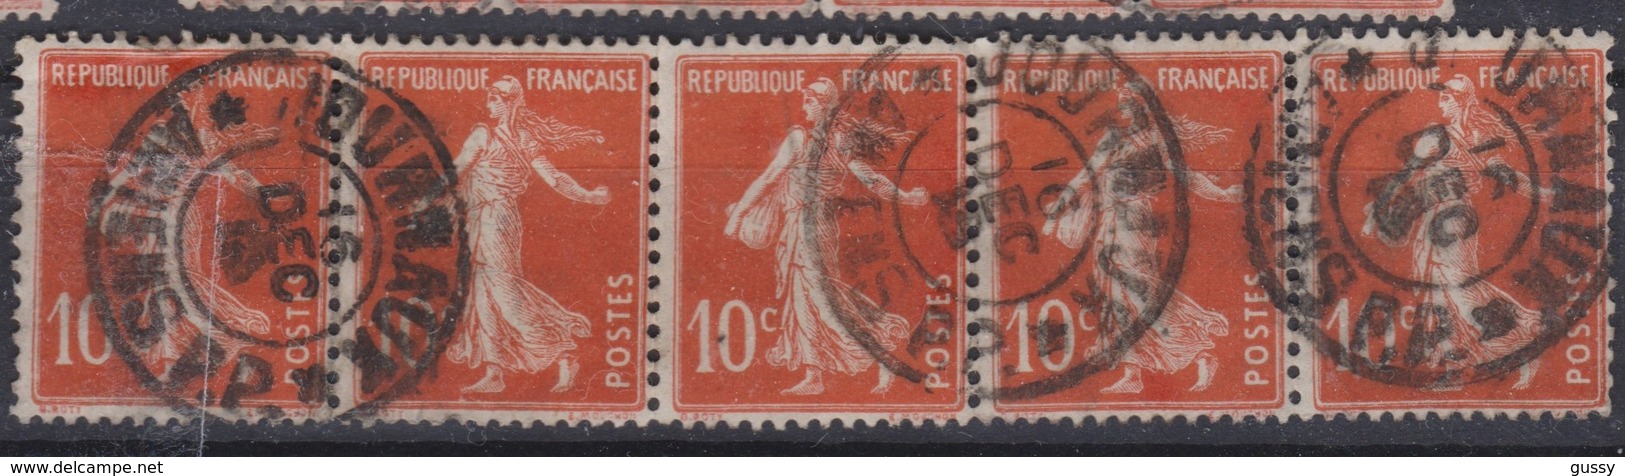 FRANCE Journaux 1906:  Le 10c Rouge Bande De 5  (Y&T 138) Avec Oblitération  Pas Très Courante   'Journaux-Amiens'   TB - Zeitungsmarken (Streifbänder)